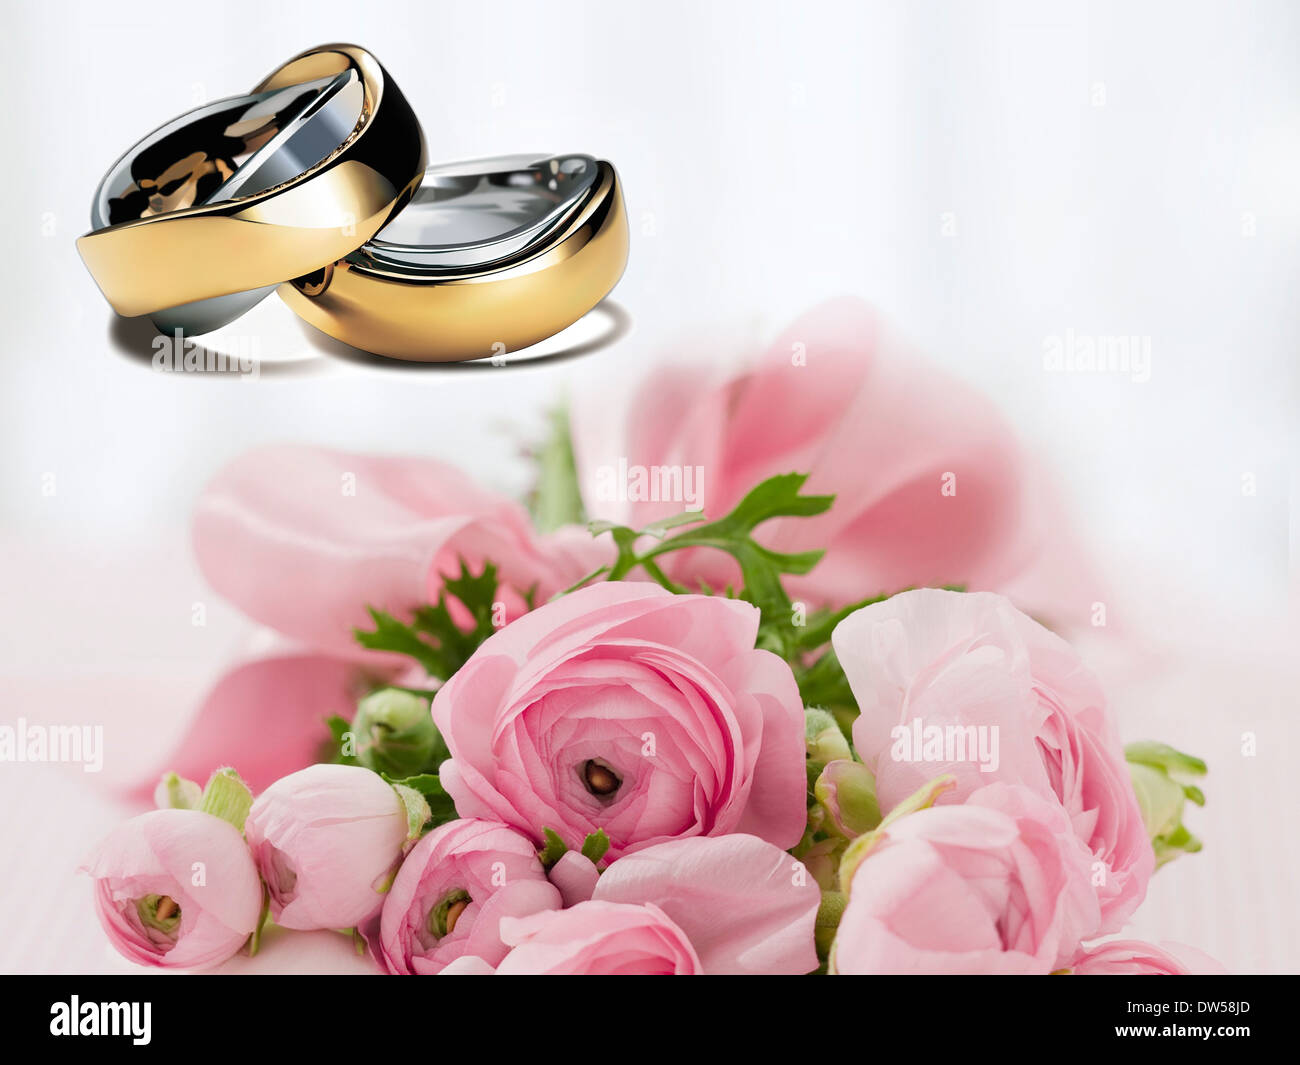 Mariage avant de se marier mariage amour d'or Banque D'Images